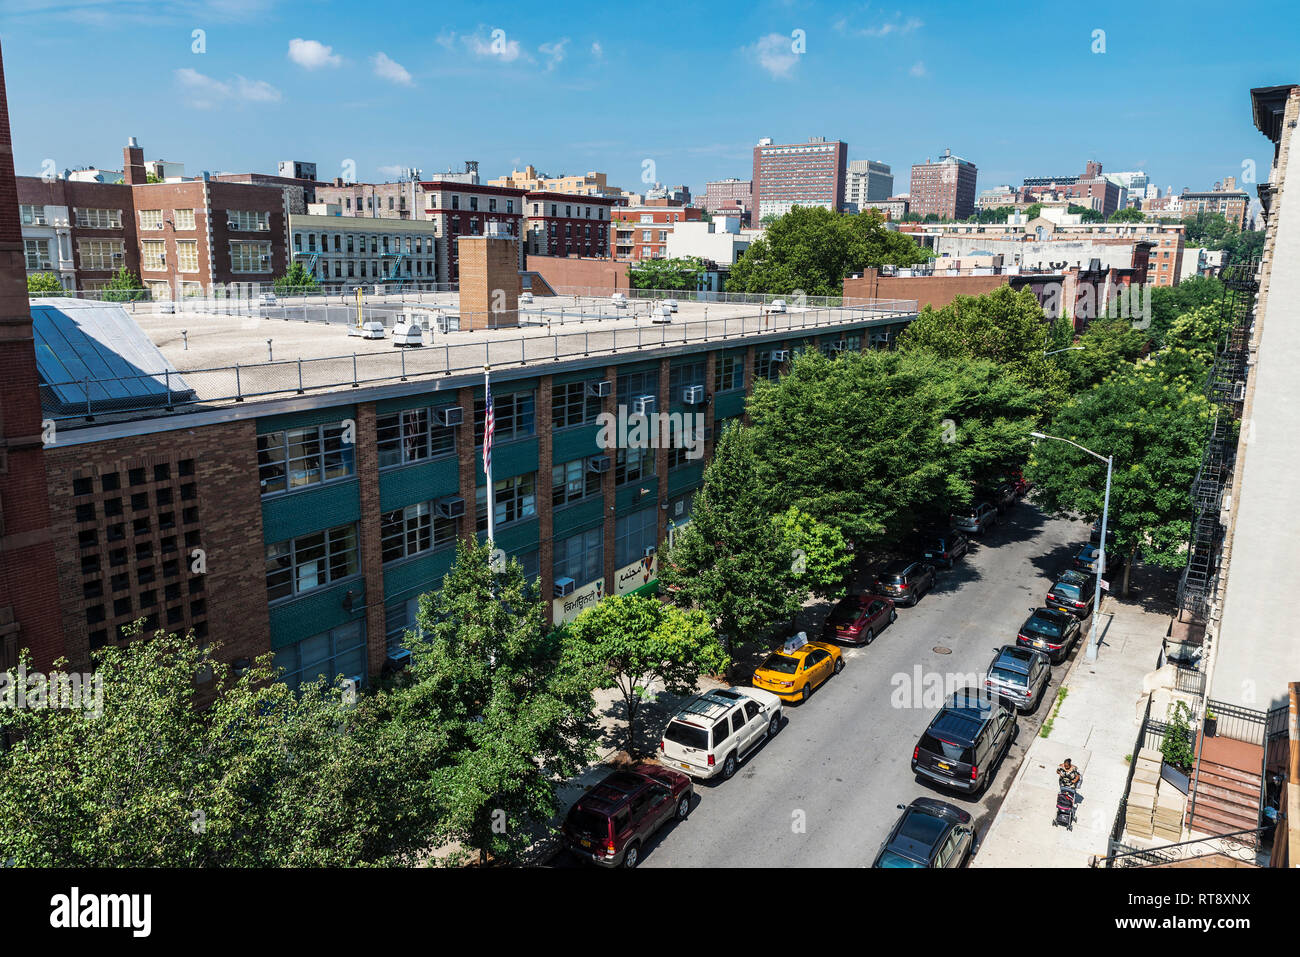 New York City, USA - 28. Juli 2018: Überblick über eine Straße mit ihren alten typischen Häuser und Menschen um im Harlem Stadtteil von Manhattan, New Yo Stockfoto